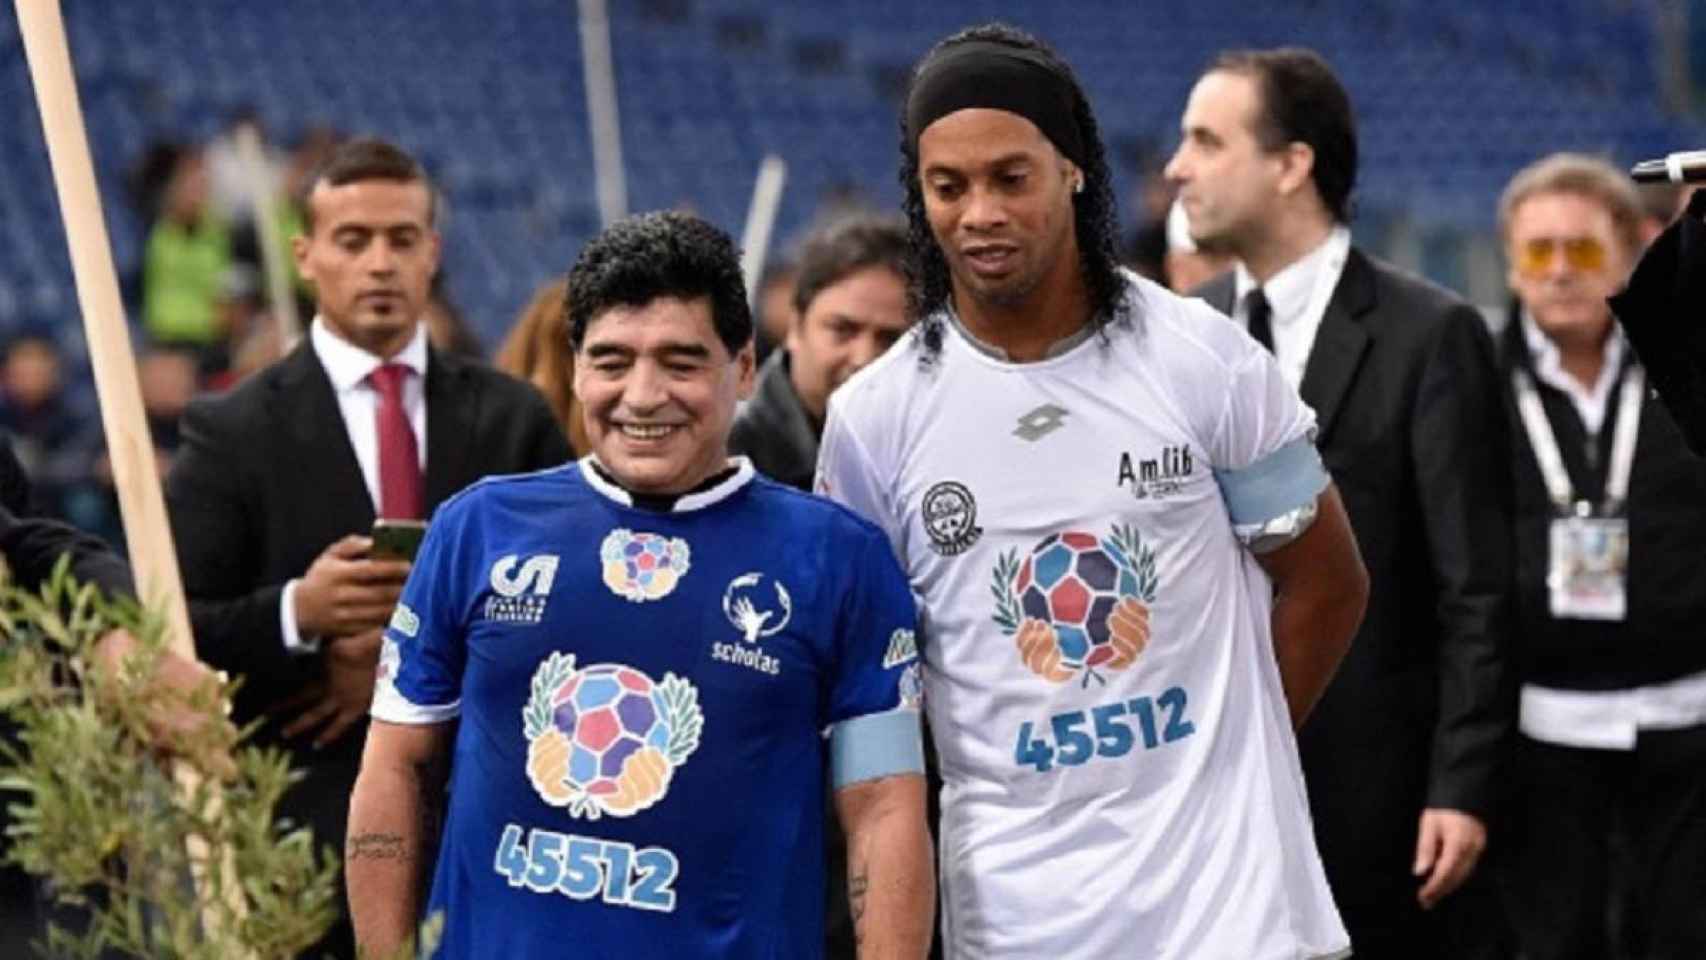 Maradona y Ronaldinho en un amistoso benéfico / Redes